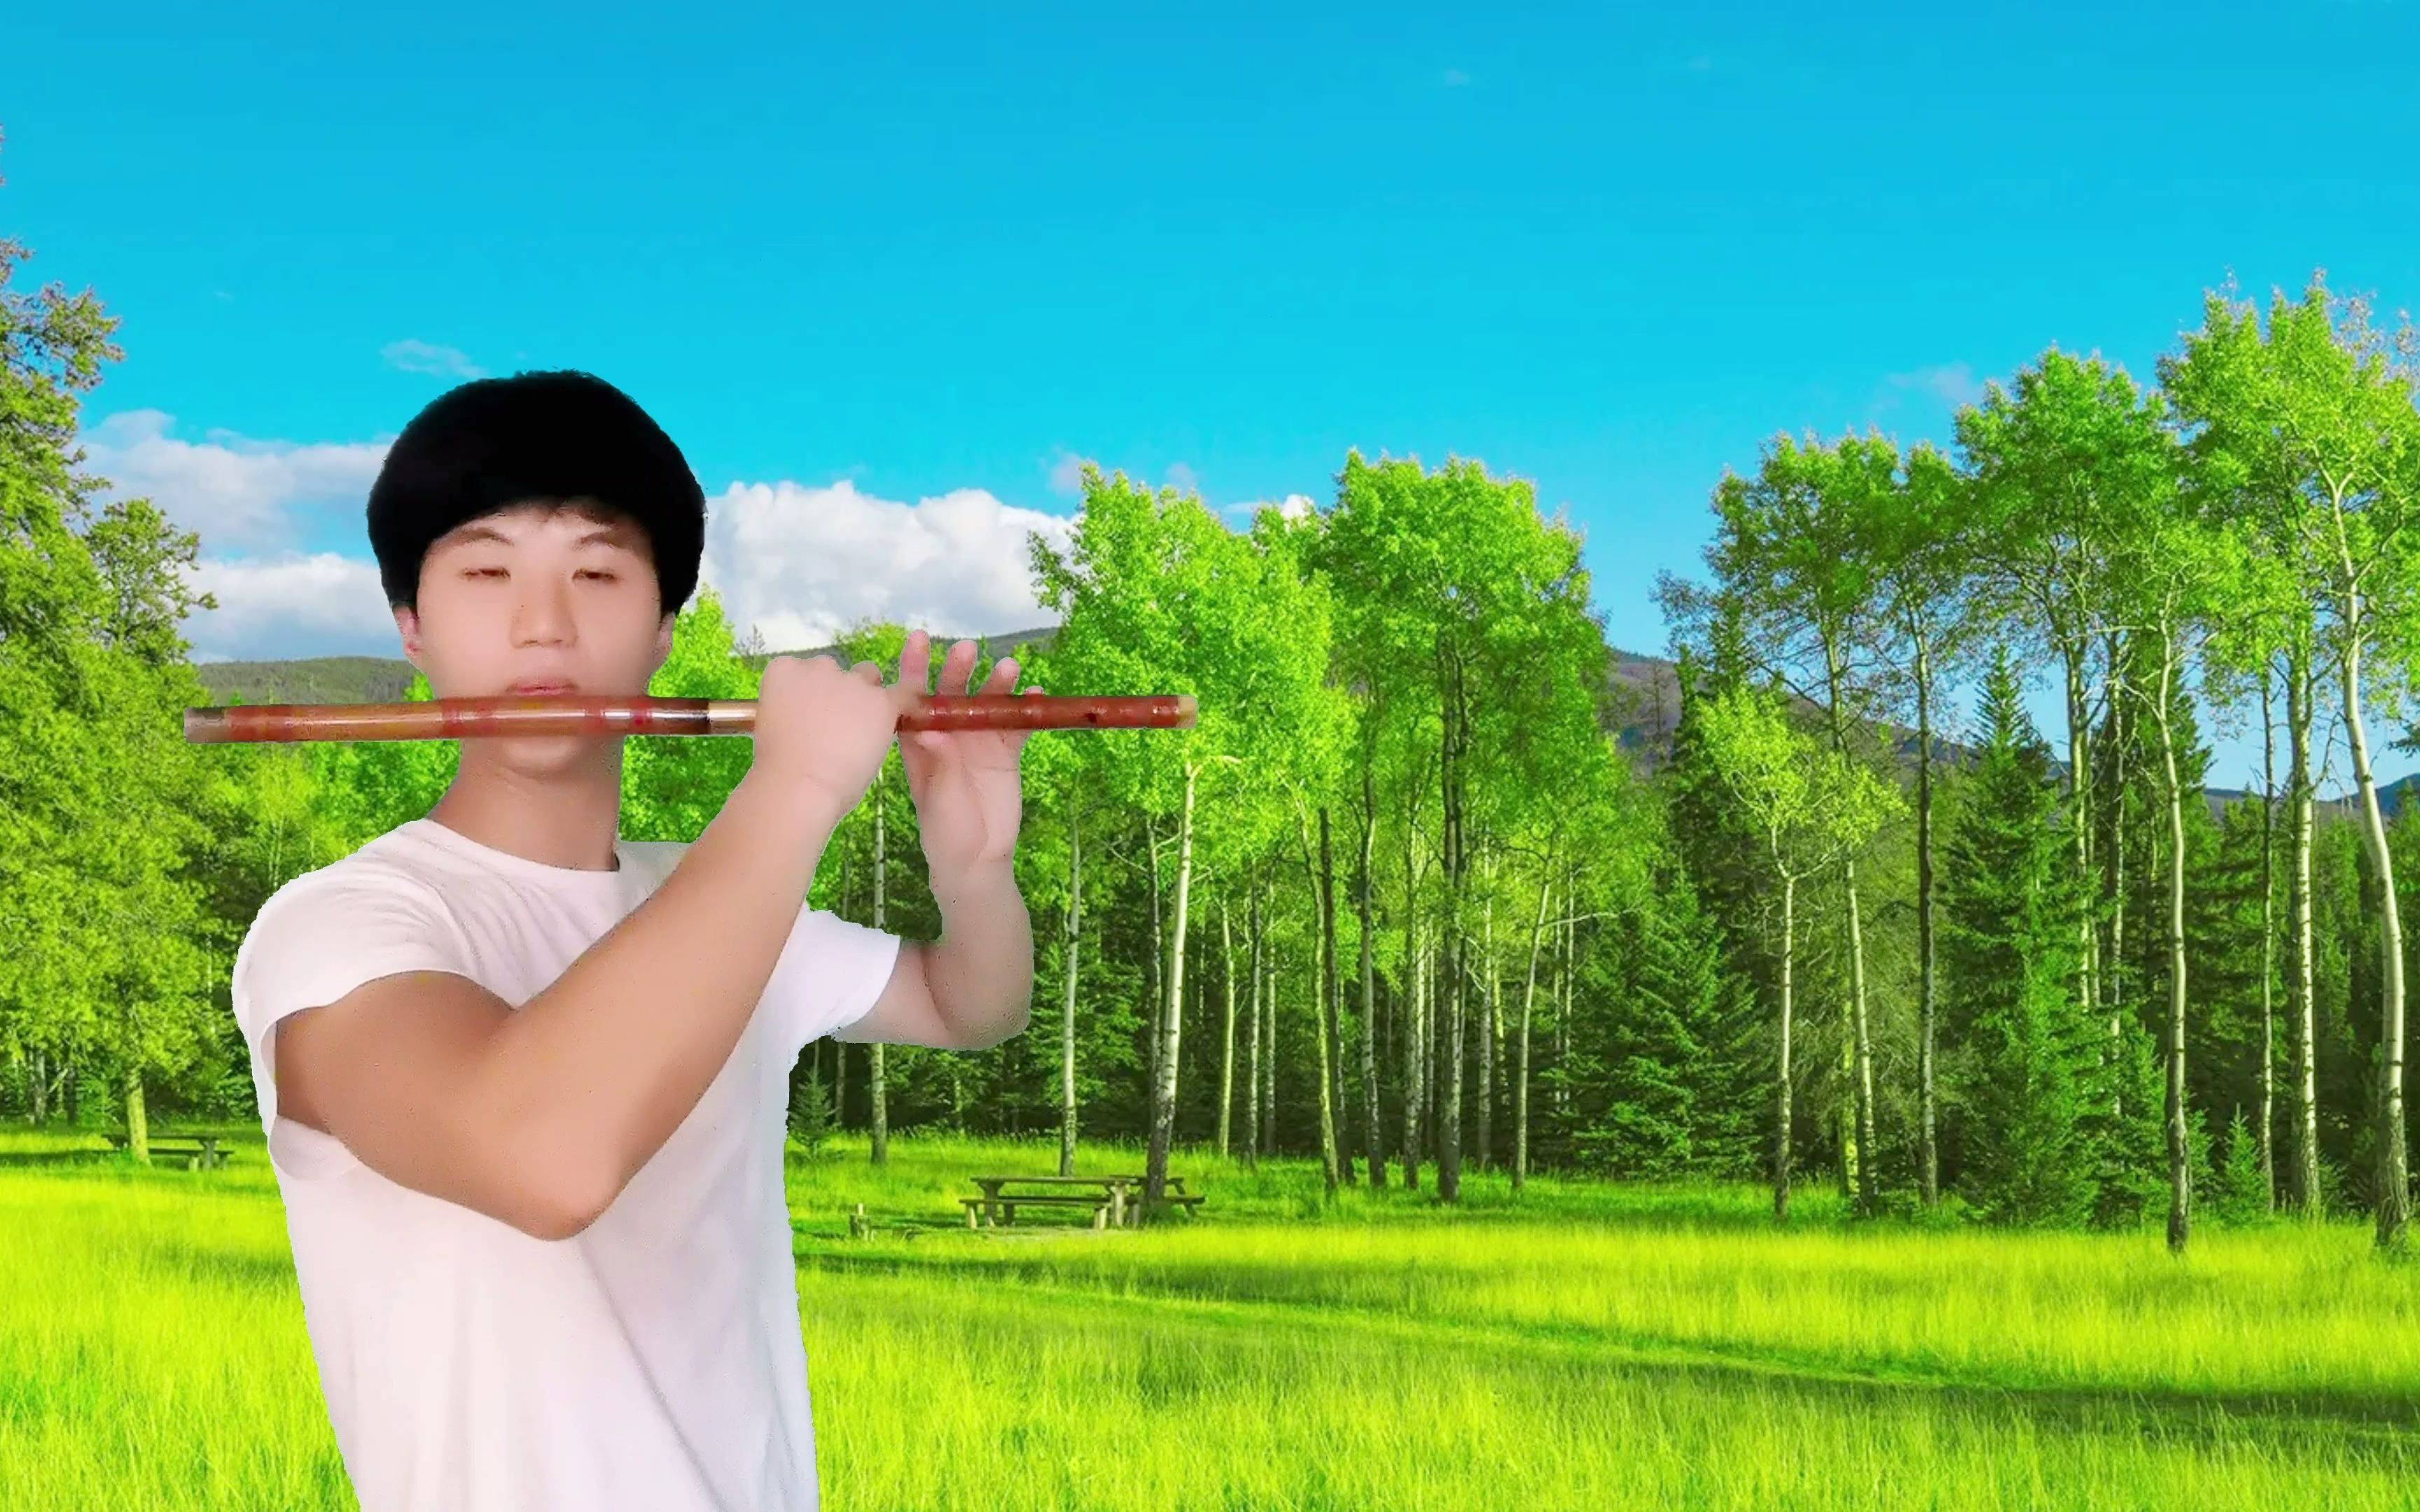 这里是关于民族乐器竹笛的圈圈、喜欢笛子的你赶紧快来围观吧…… - 哔哩哔哩